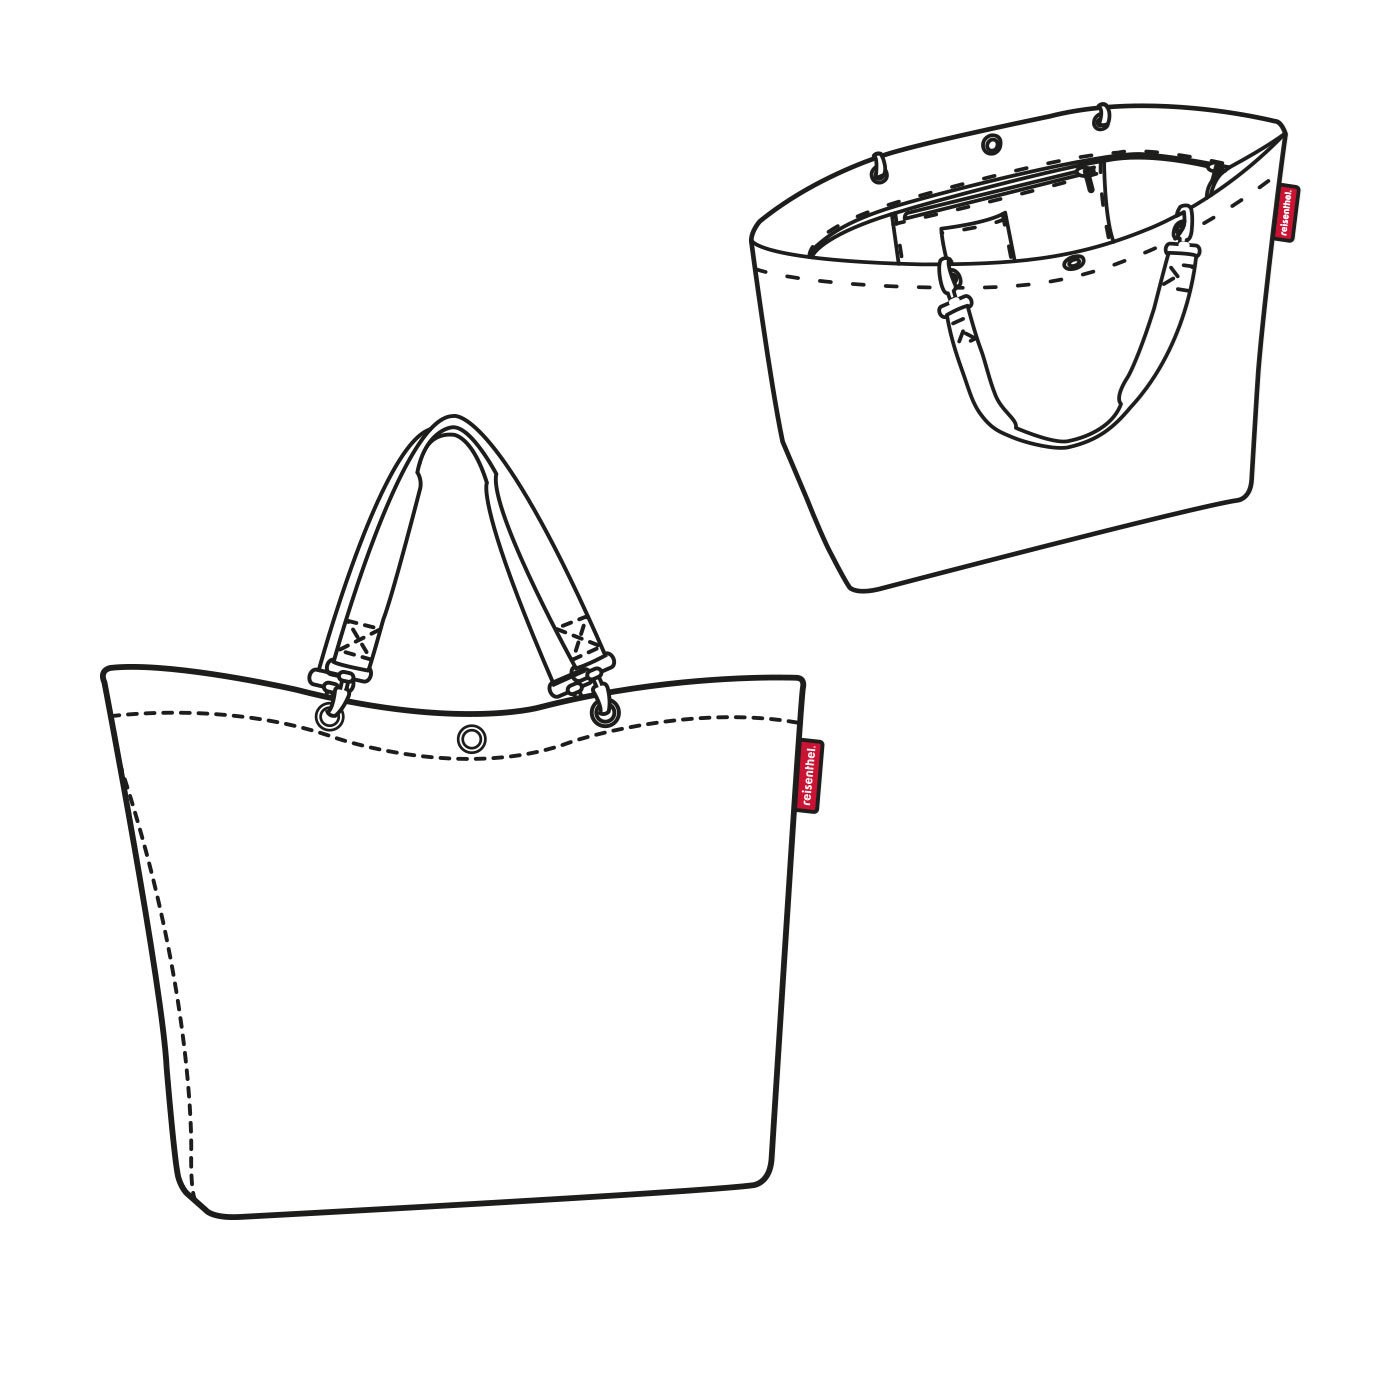 Nákupní taška Shopper XL glencheck red_4